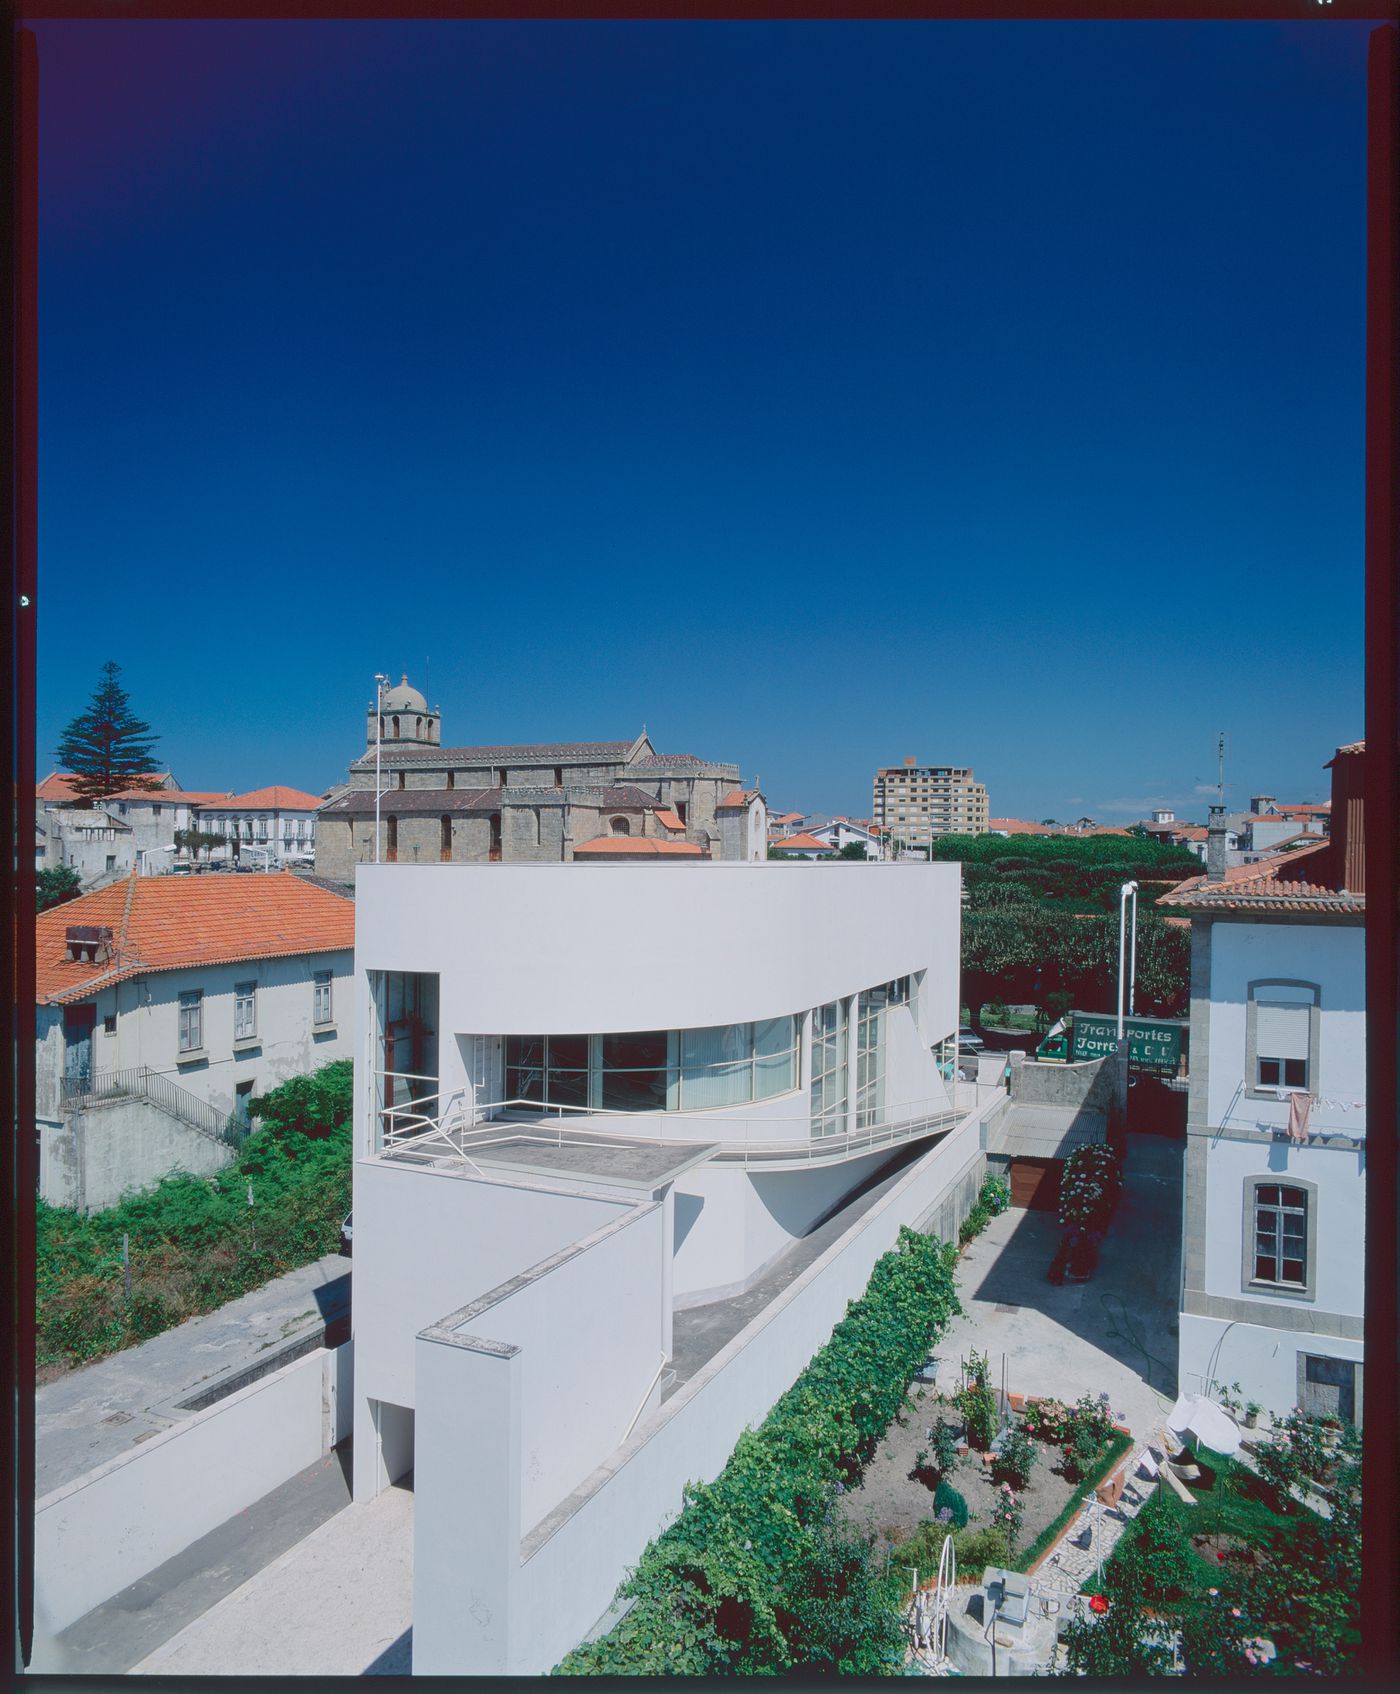 View of Banco Borges & Irmão II [Borges & Irmão bank II], Vila do Conde, Portugal